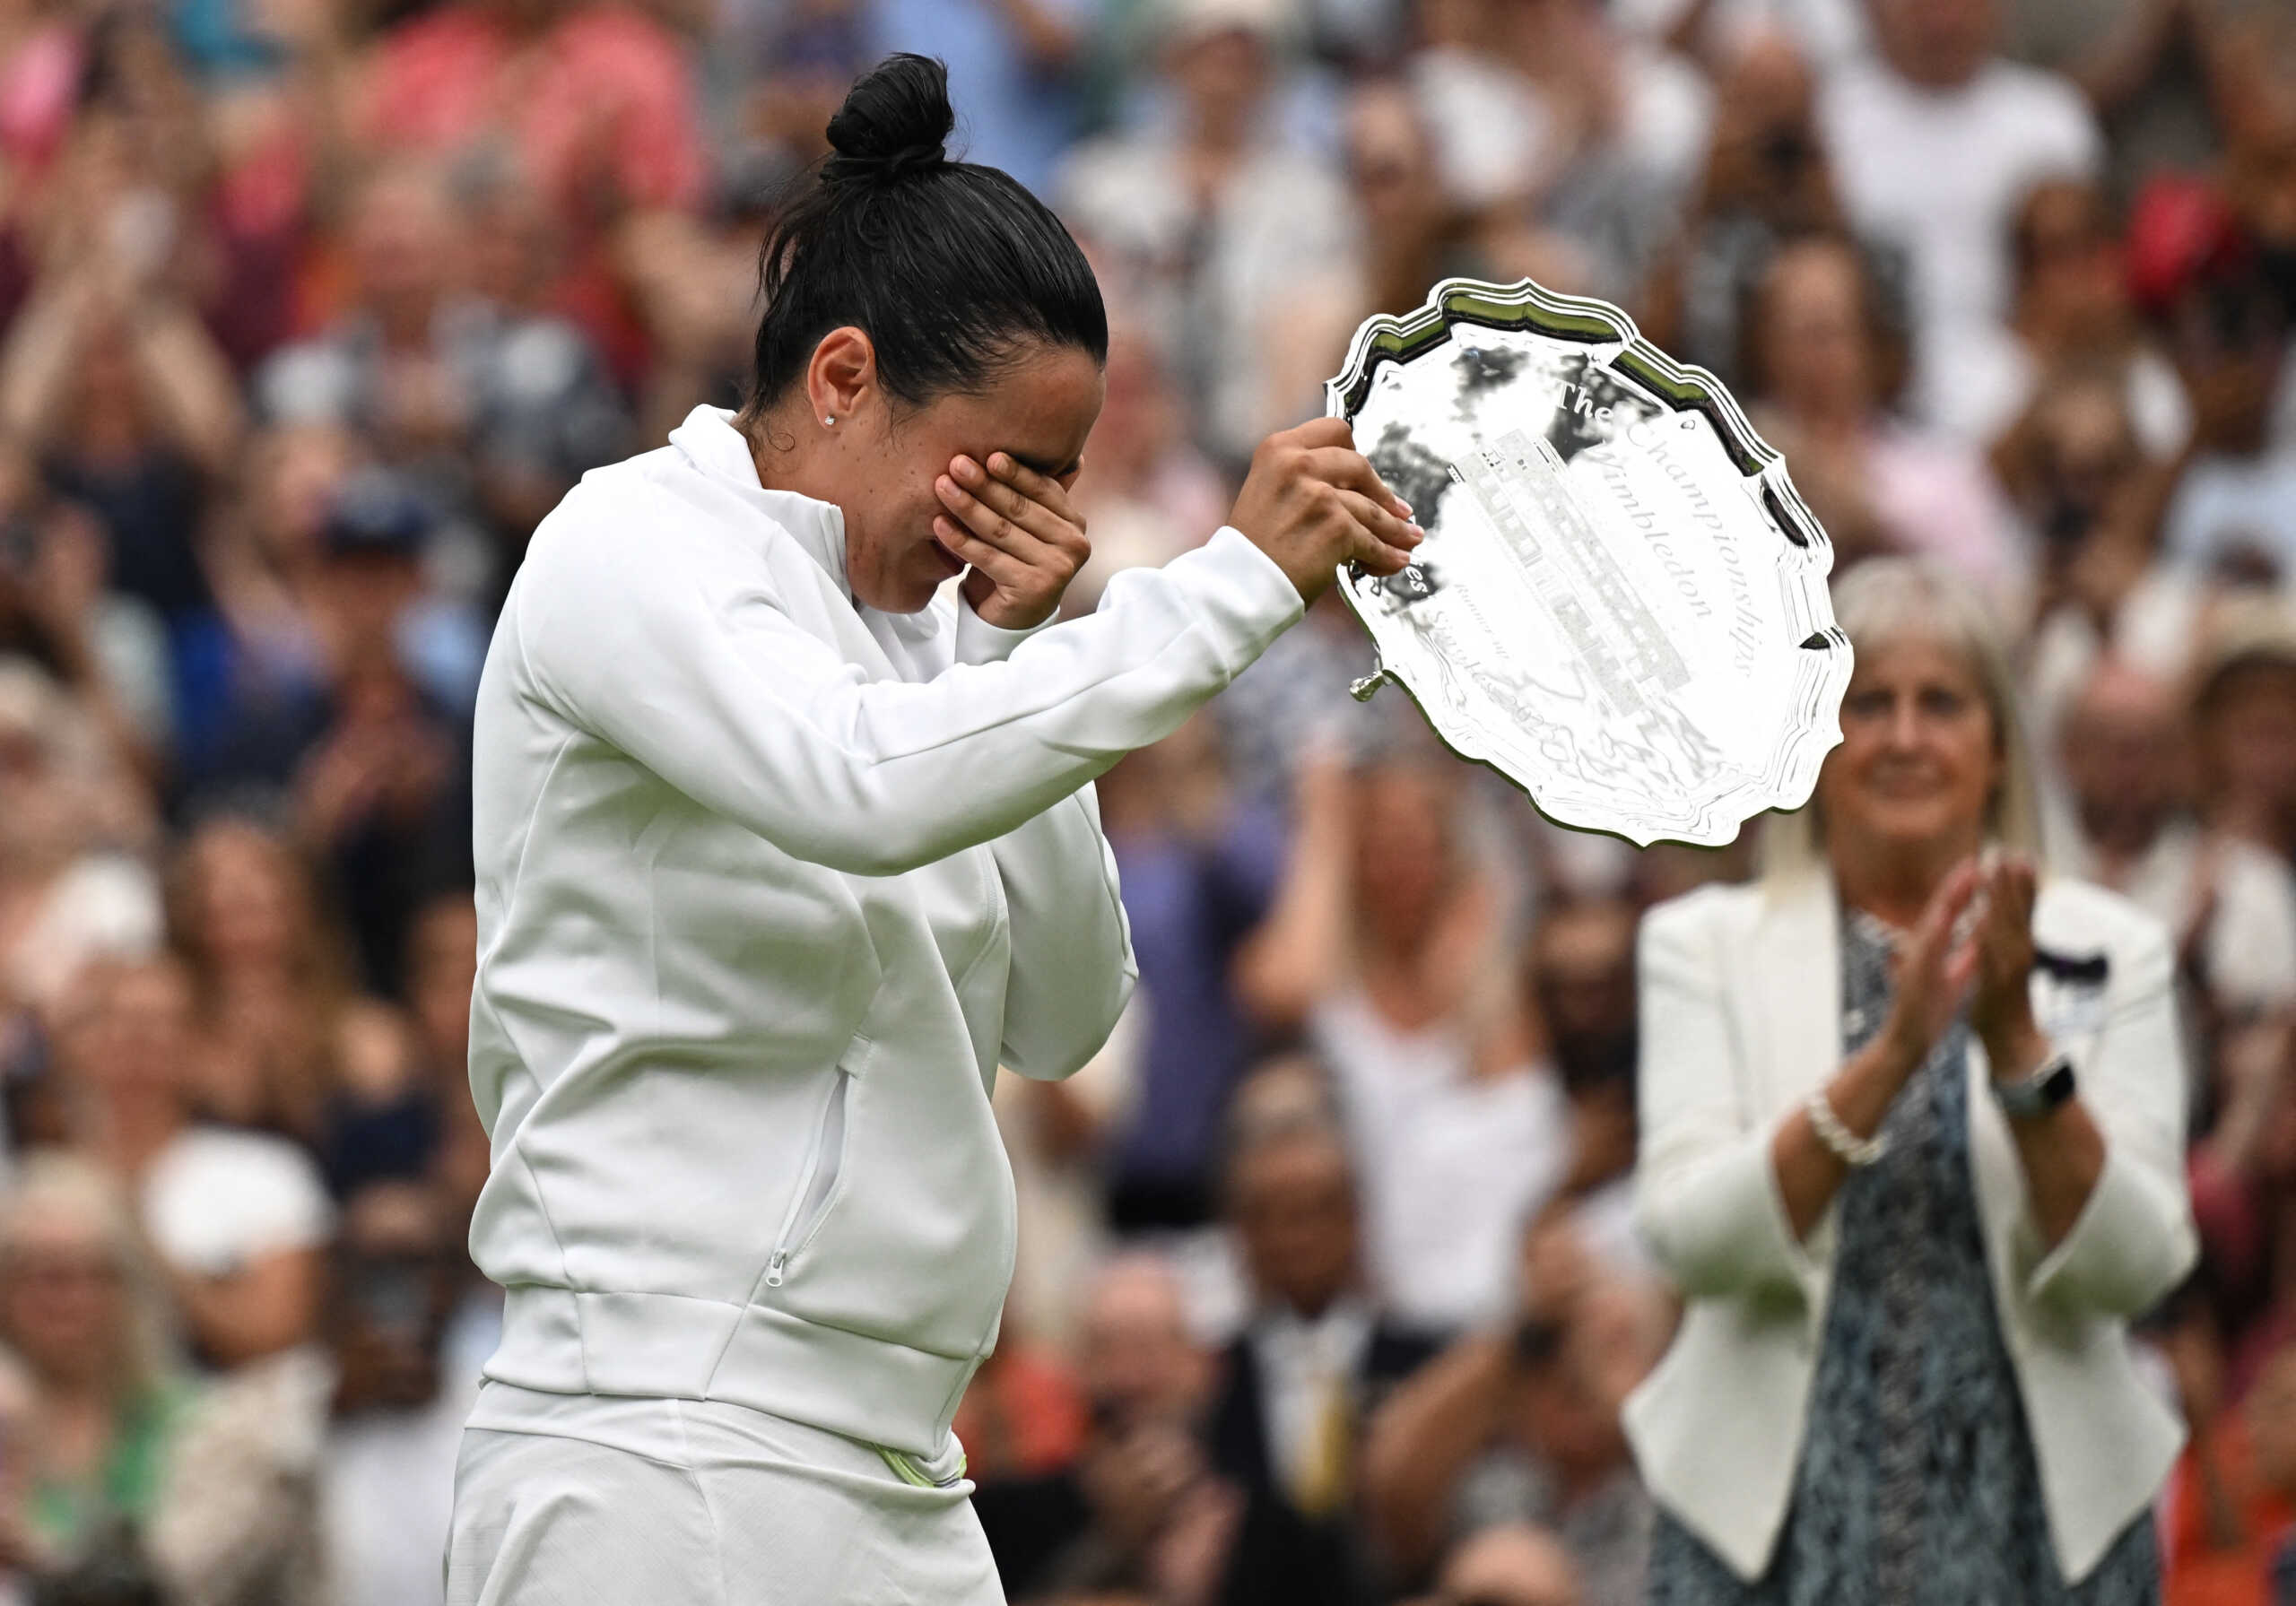 Η Ονς Τζαμπέρ πλάνταξε στο κλάμα μετά την ήττα της στον τελικό του Wimbledon